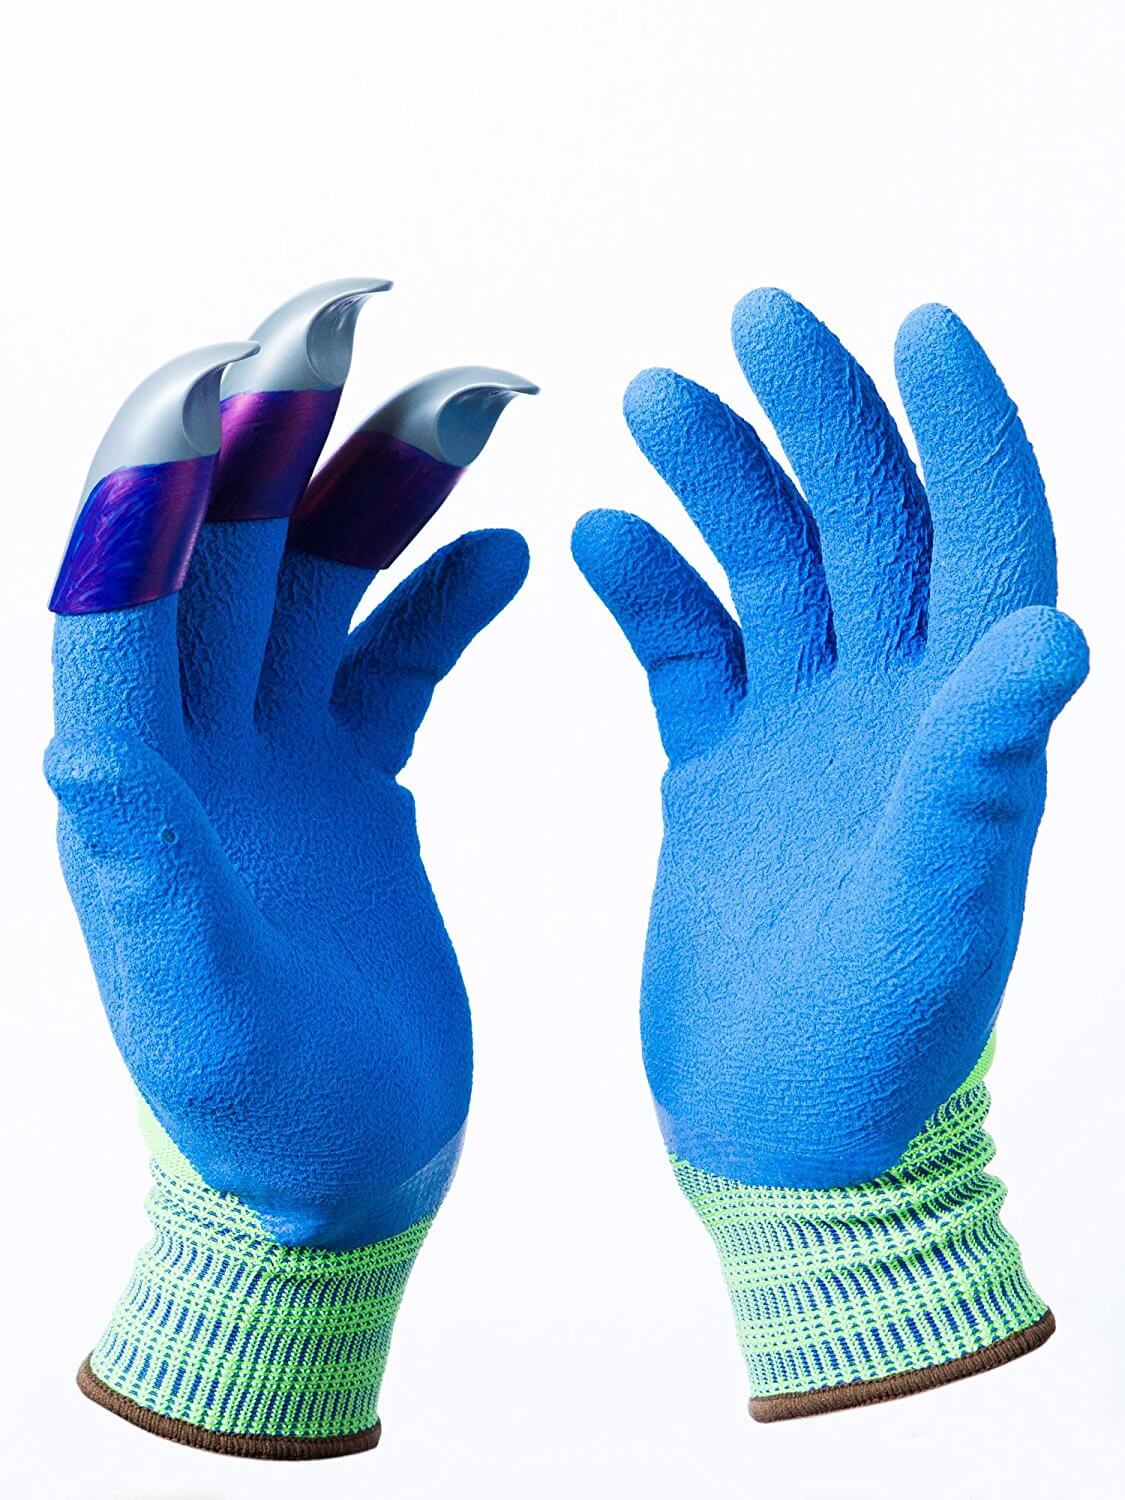 Honey Badger Digging Gloves